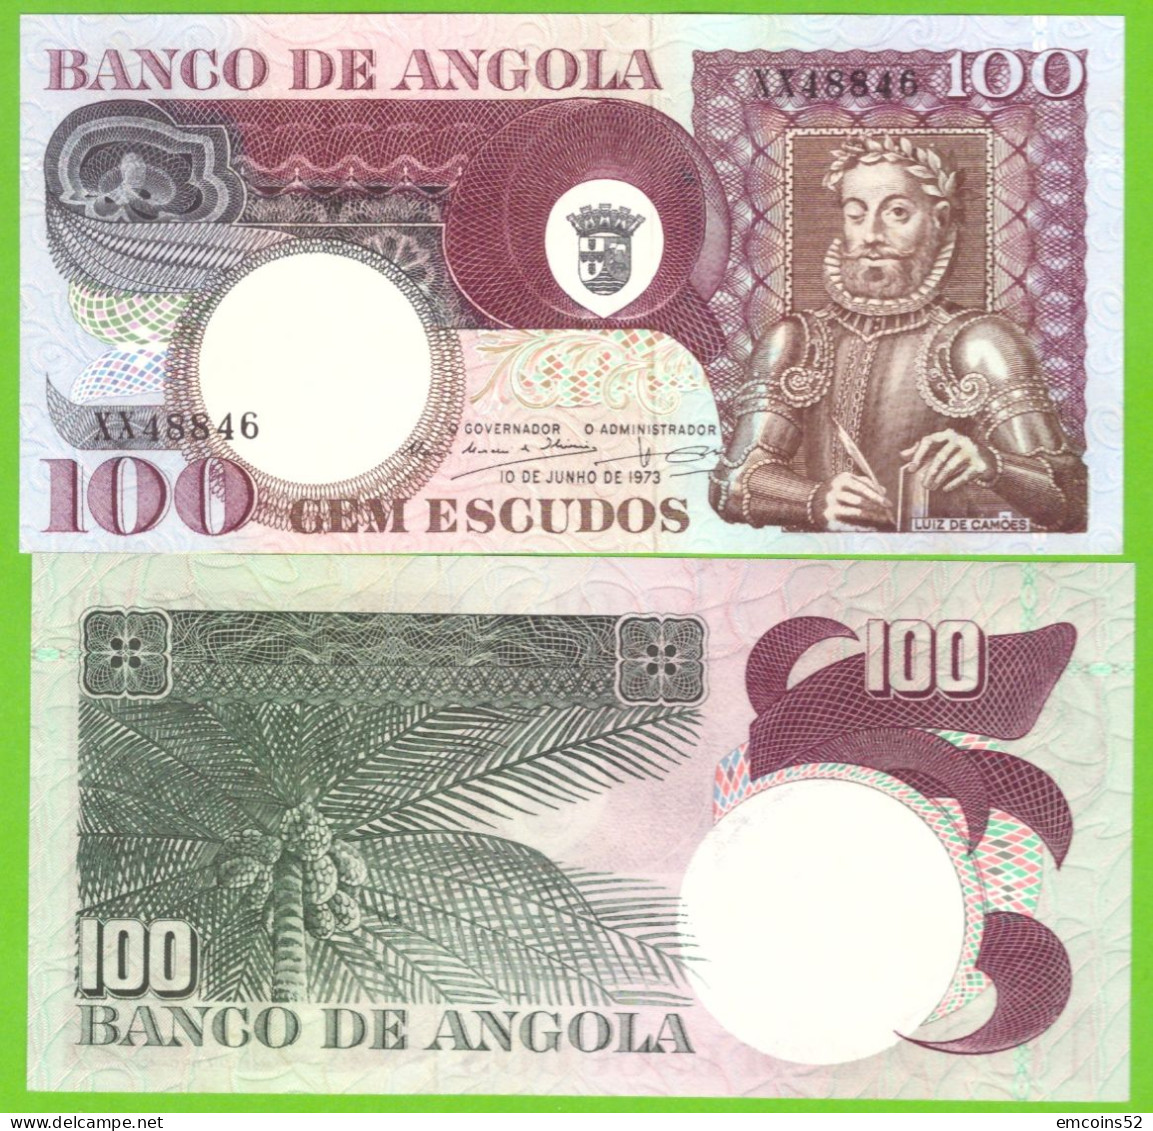 ANGOLA 100 ESCUDOS 1973 P-106 UNC - Angola